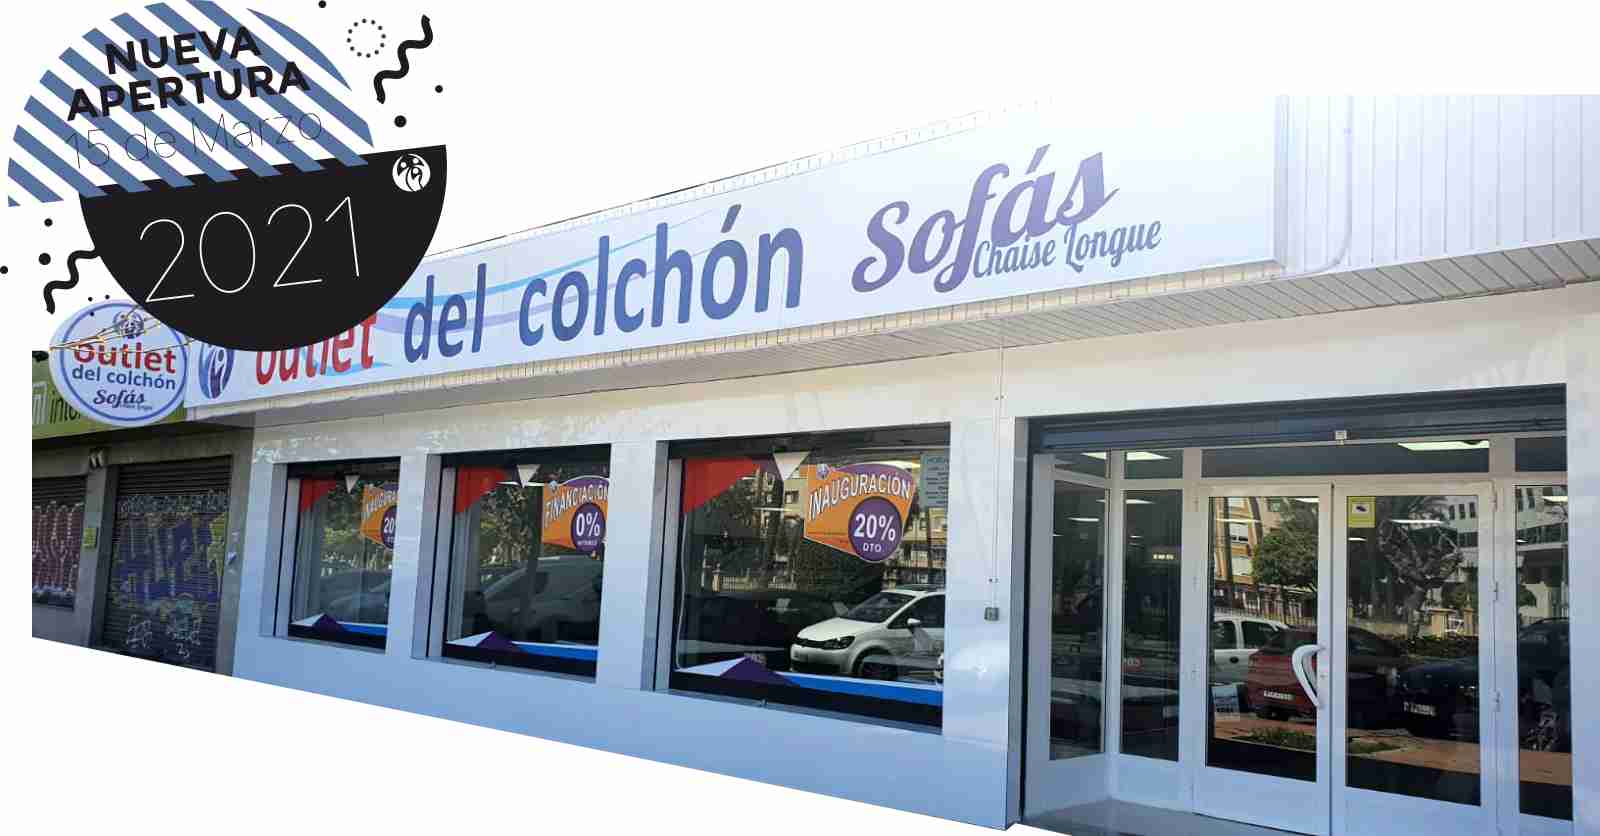 Tiendas de Colchones en Murcia - Outlet del Colchón